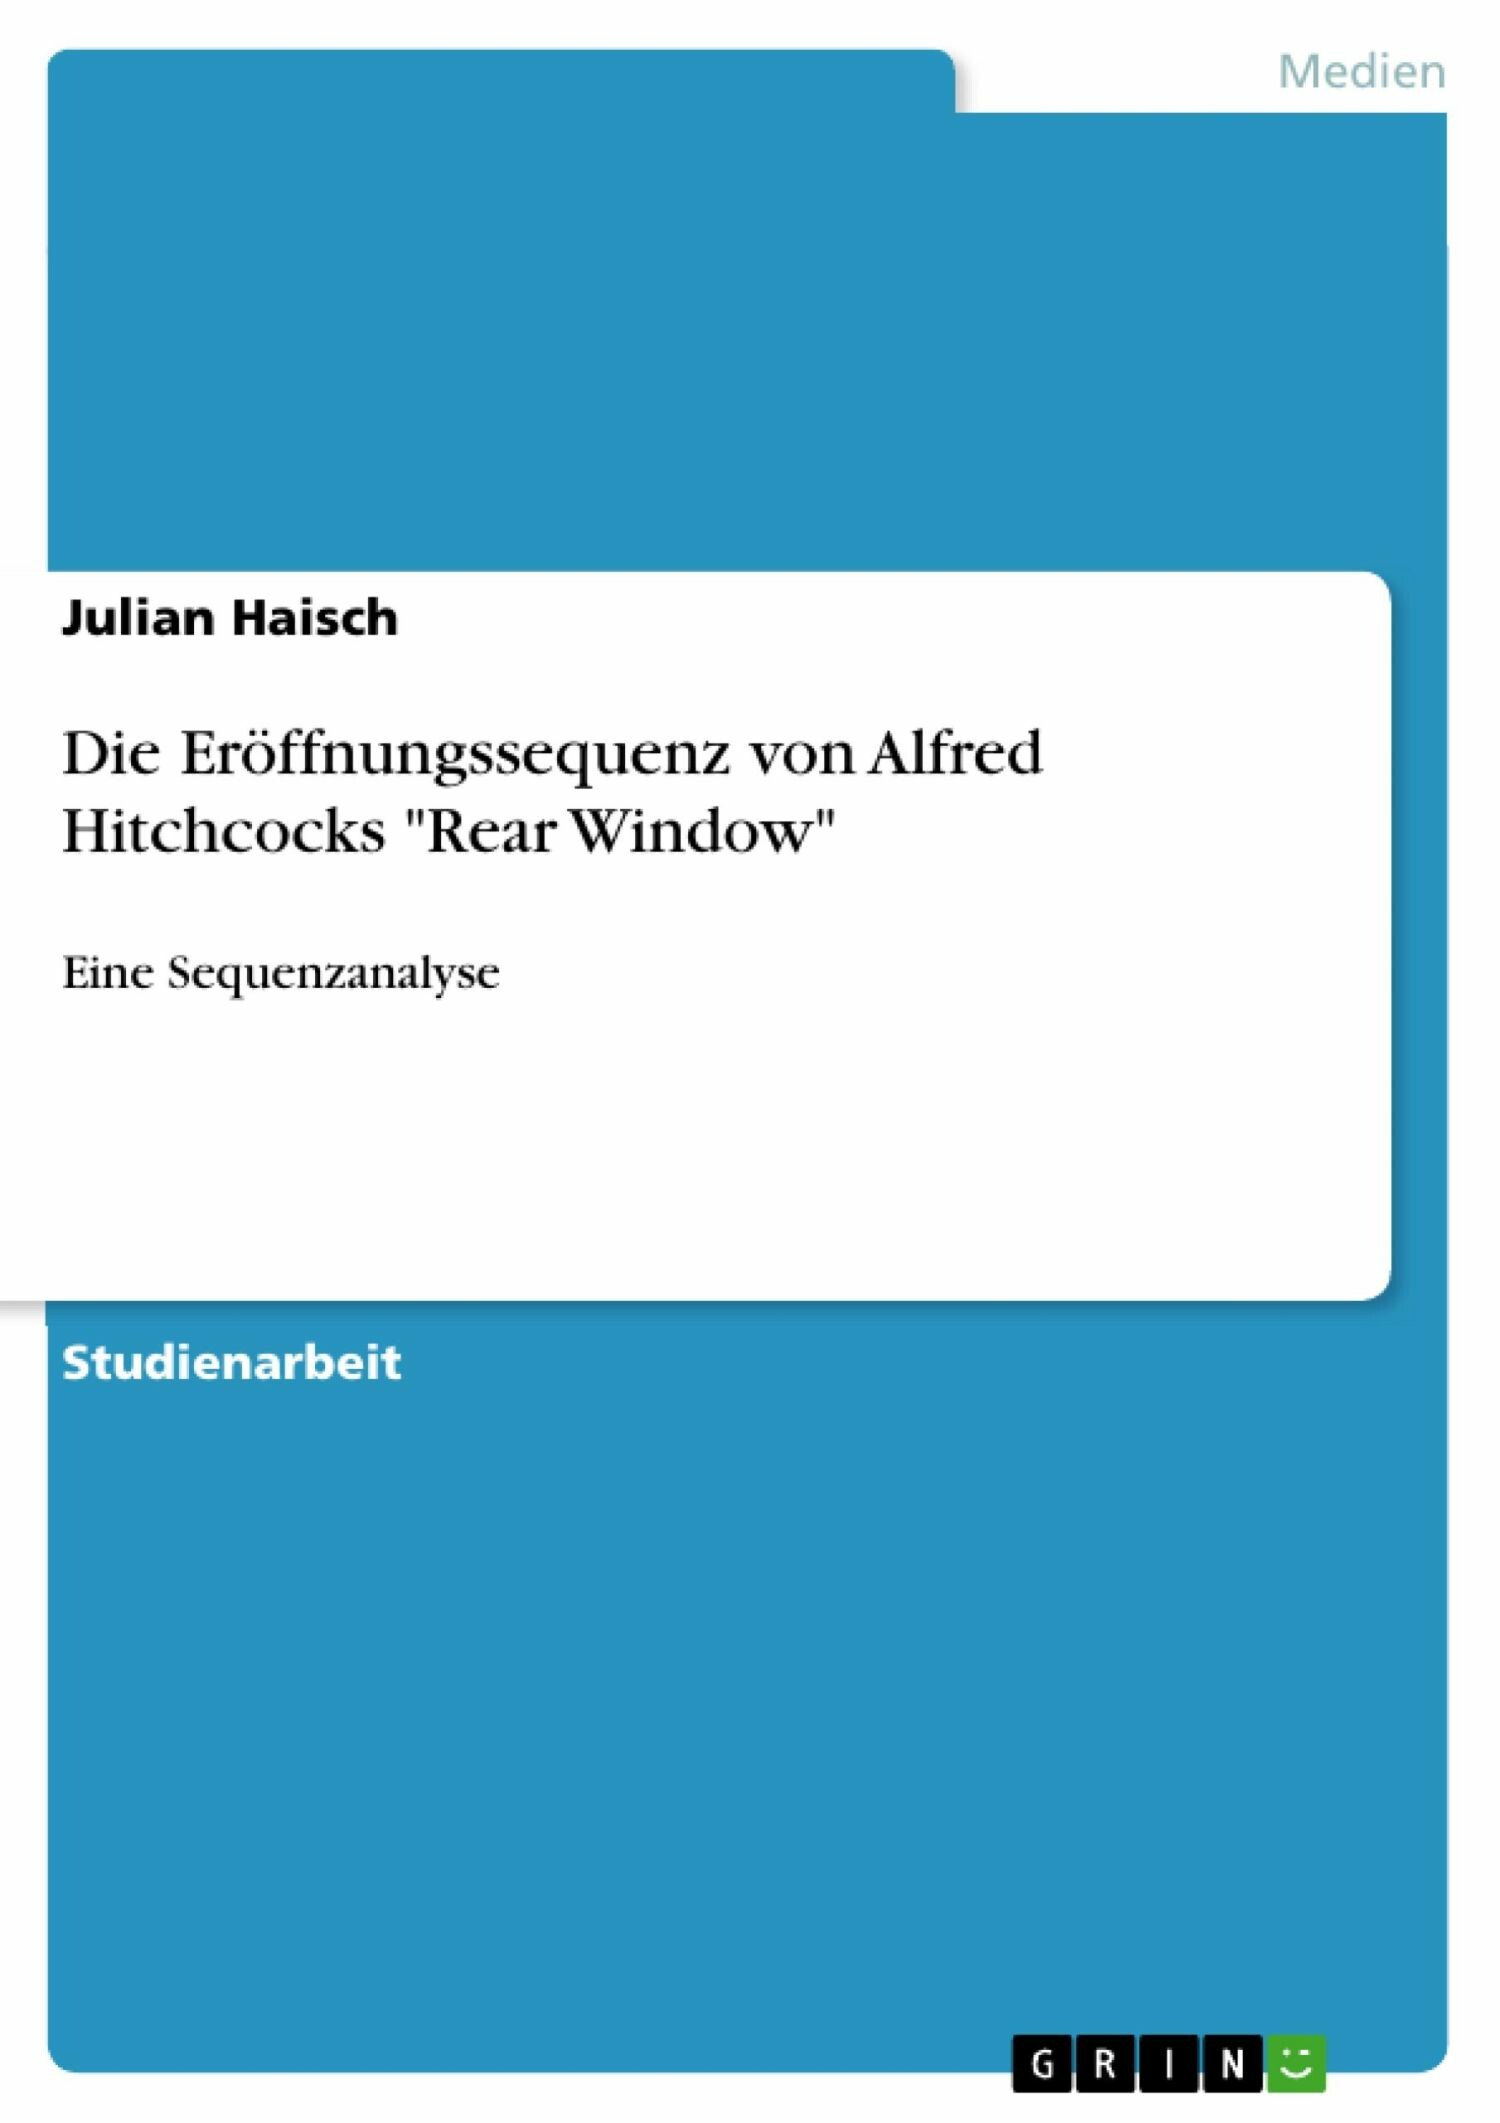 Die Eröffnungssequenz von Alfred Hitchcocks 'Rear Window'